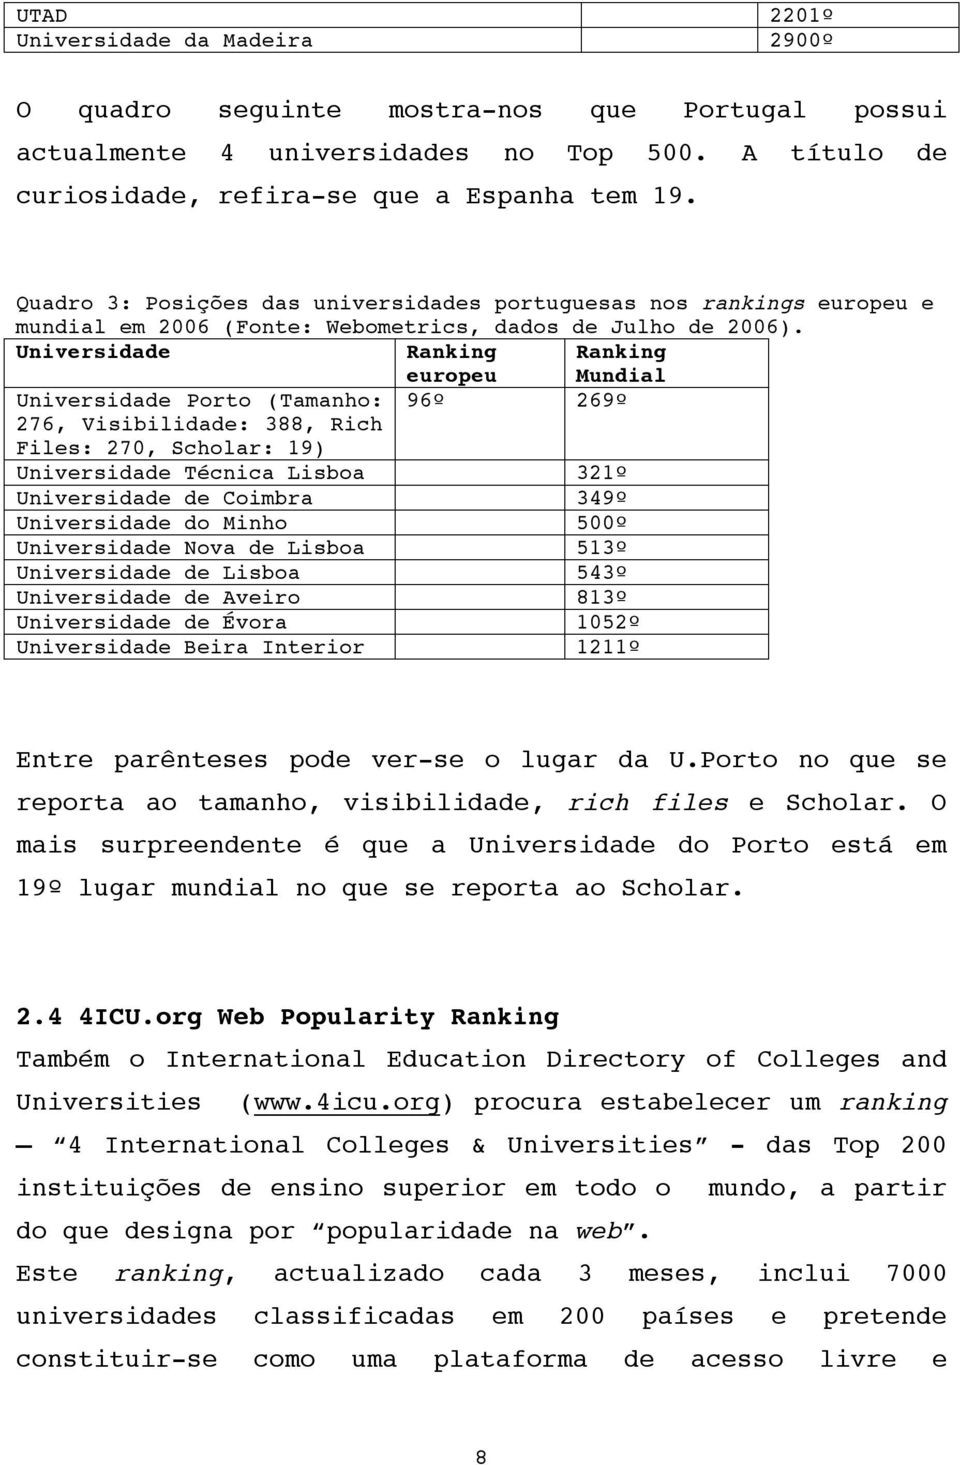 Universidade Ranking europeu Ranking Mundial Universidade Porto (Tamanho: 96º 269º 276, Visibilidade: 388, Rich Files: 270, Scholar: 19) Universidade Técnica Lisboa 321º Universidade de Coimbra 349º